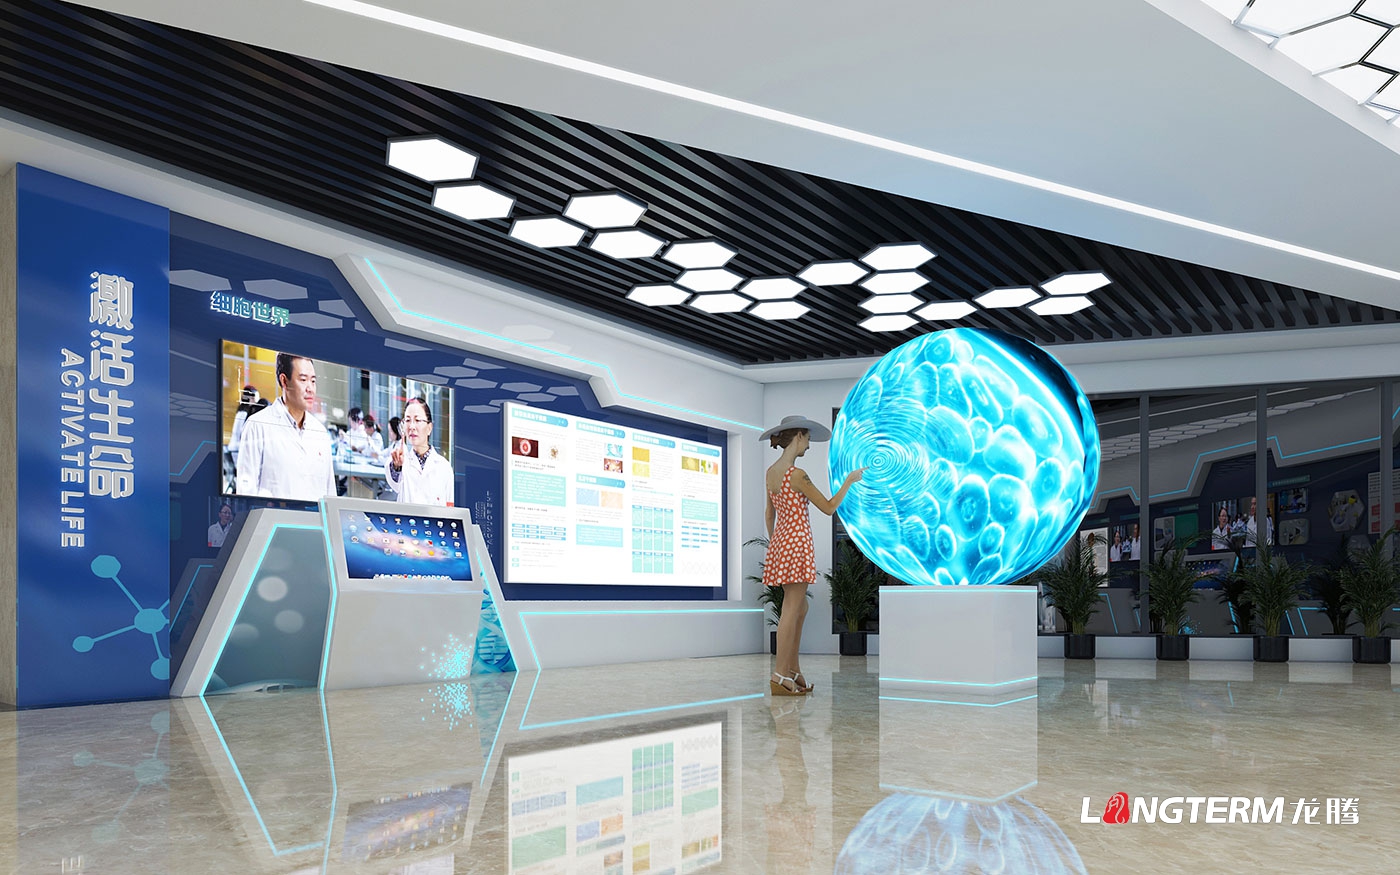 成都市科普教育基地(新生命干細胞)大廳升級改造設計效果圖——科技化、數字化、互動化展覽展示